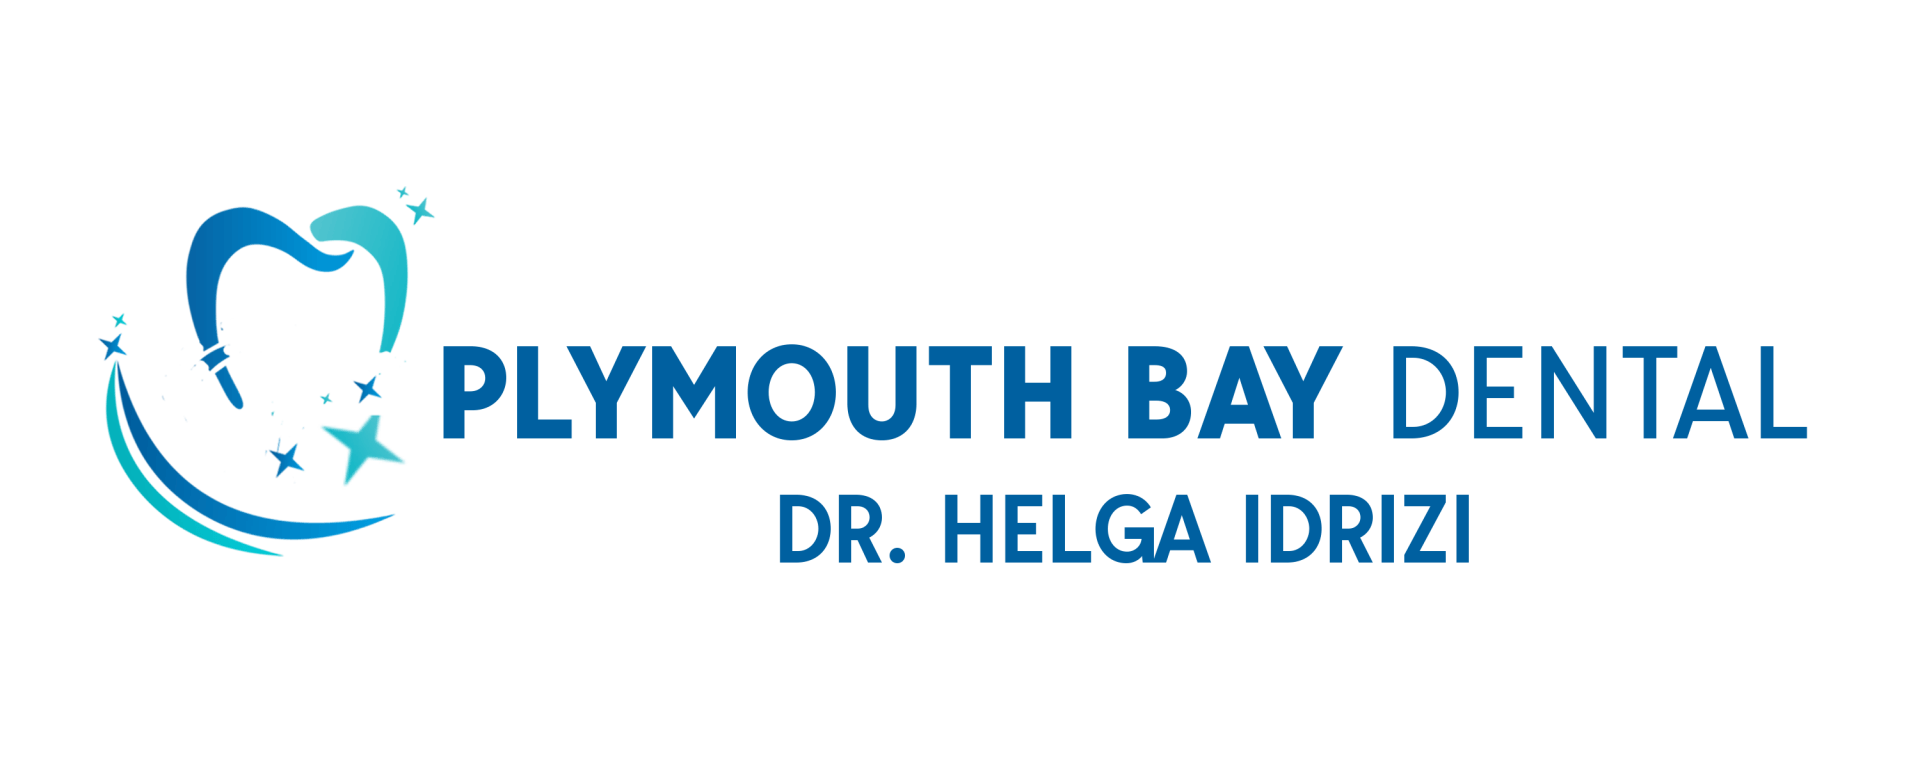 Plymouth Bay dental clinic